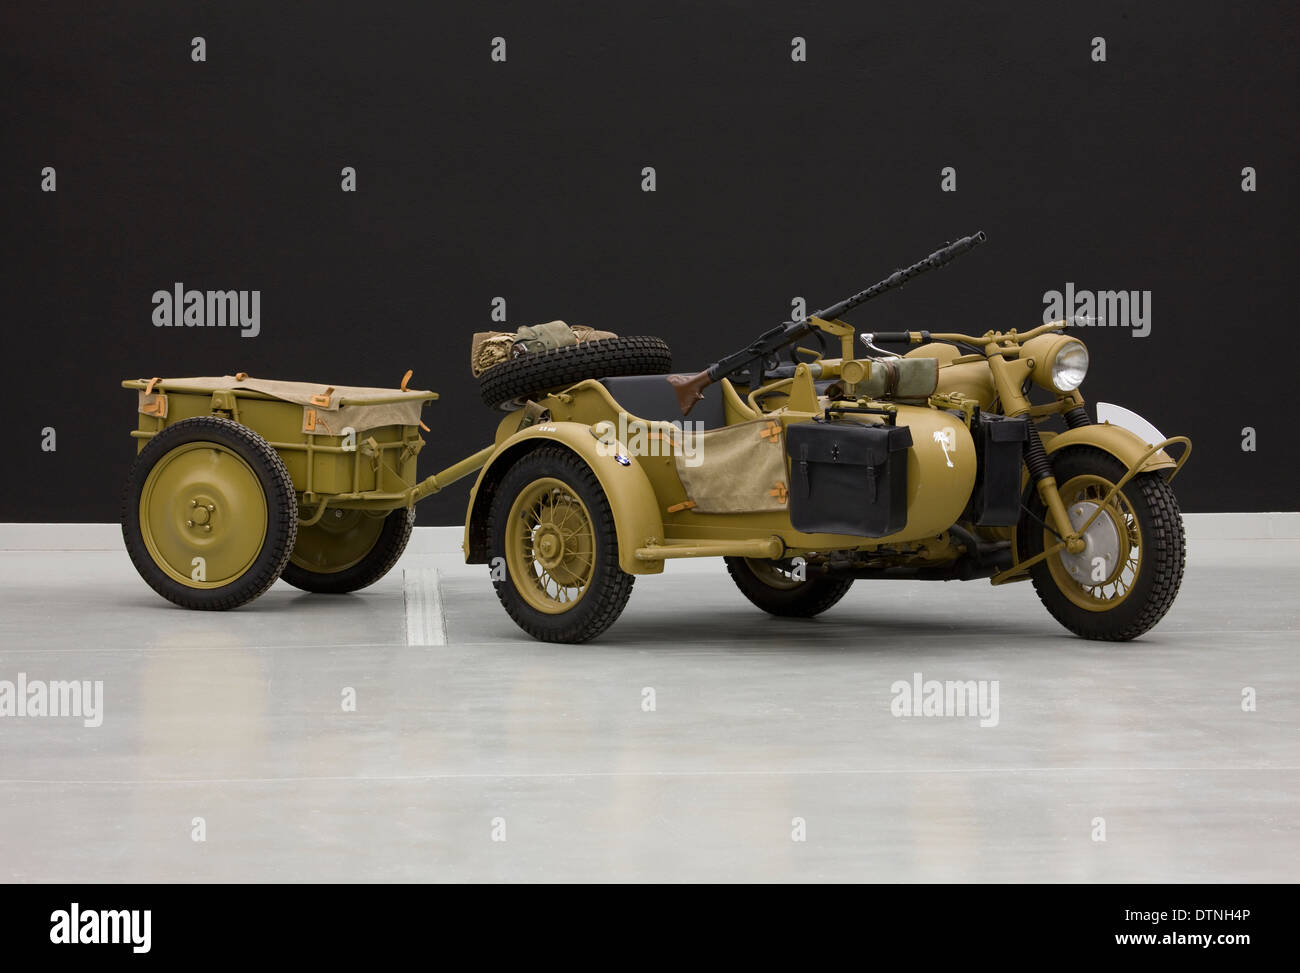 1943 BMW 750cc R75 Afrika Korps militärische Motorrad und Beiwagen Kombination mit Anhänger. Stockfoto